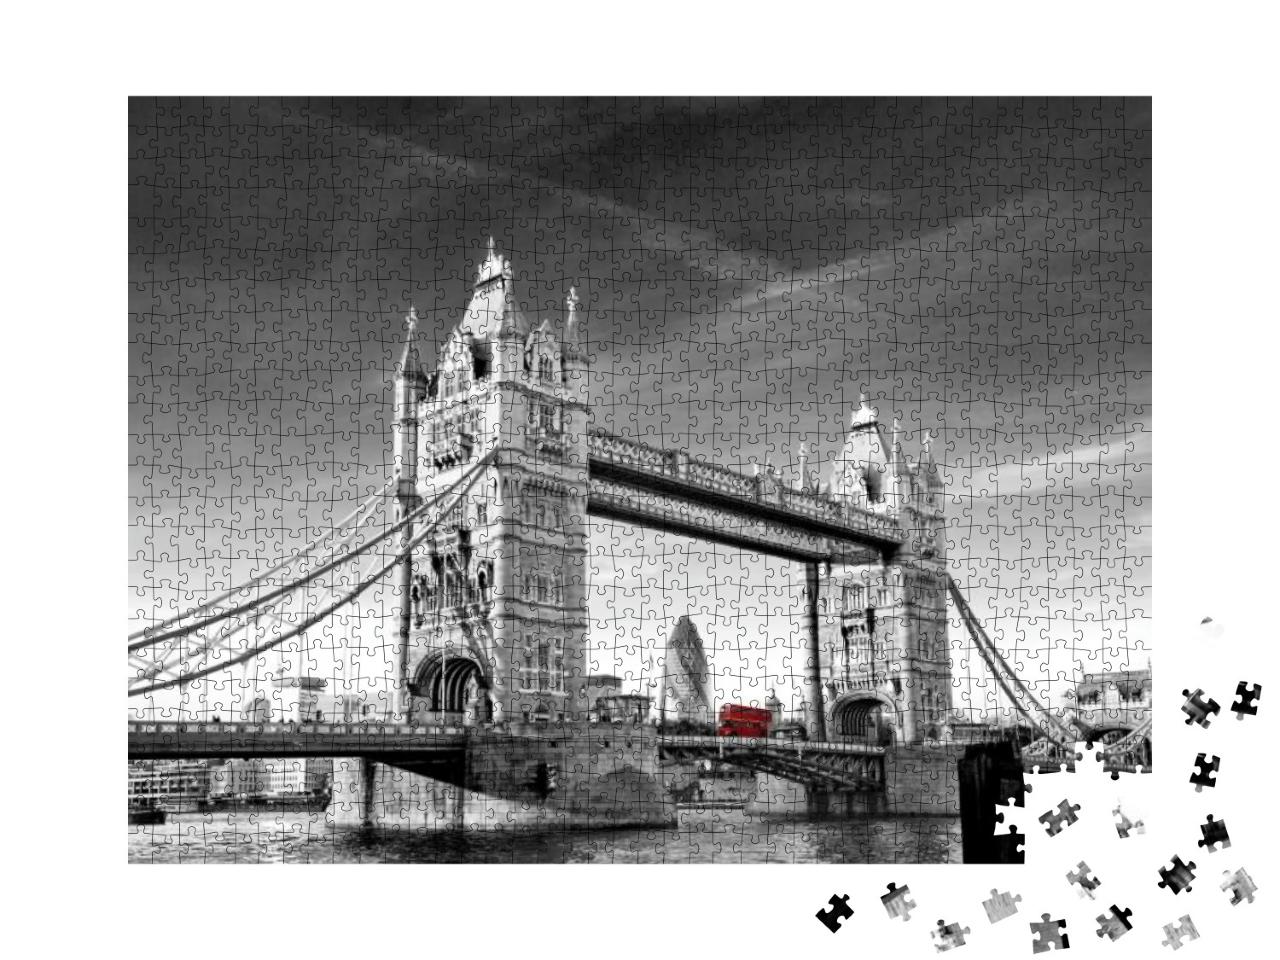 Puzzle 1000 Teile „Tower Bridge in London mit Gherkin und Routmaster-Bus“